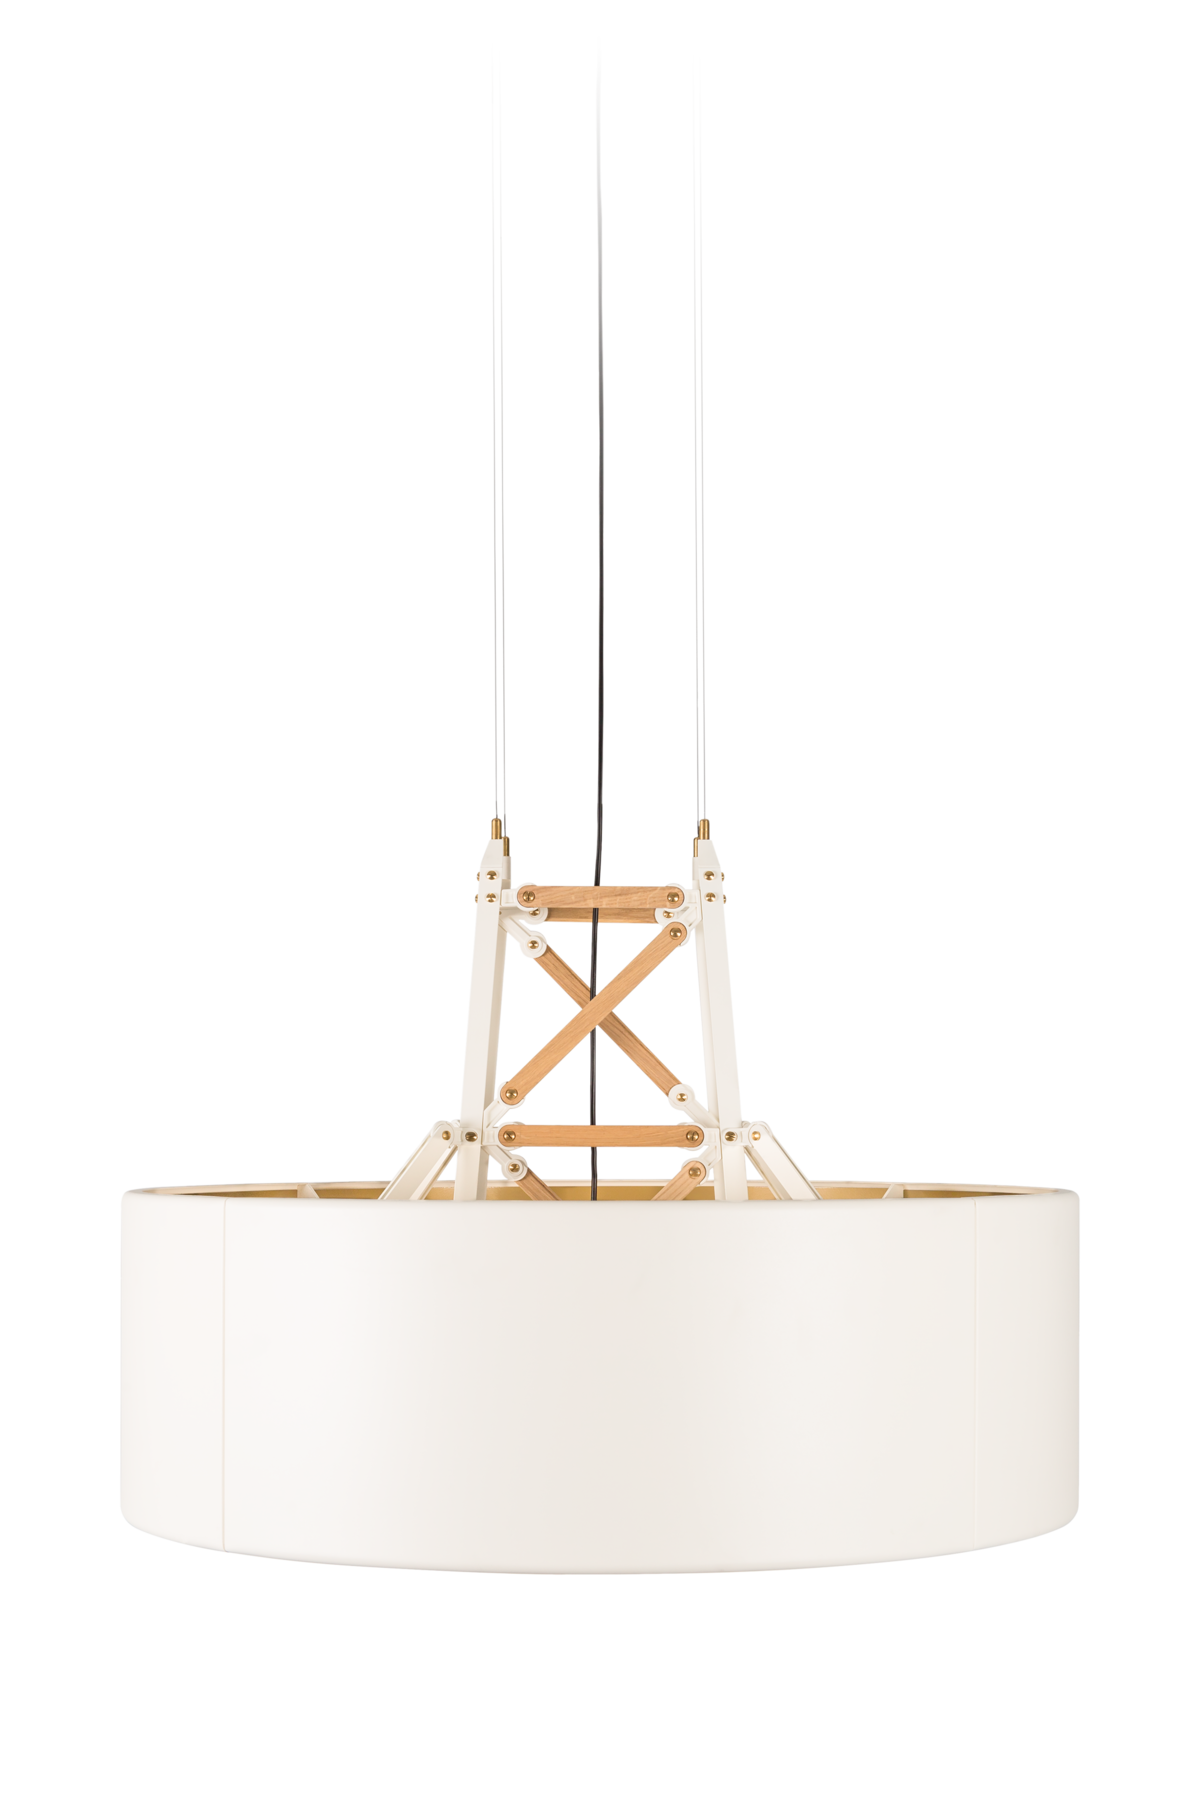 Construction-Lamp-Suspension-White-Medium